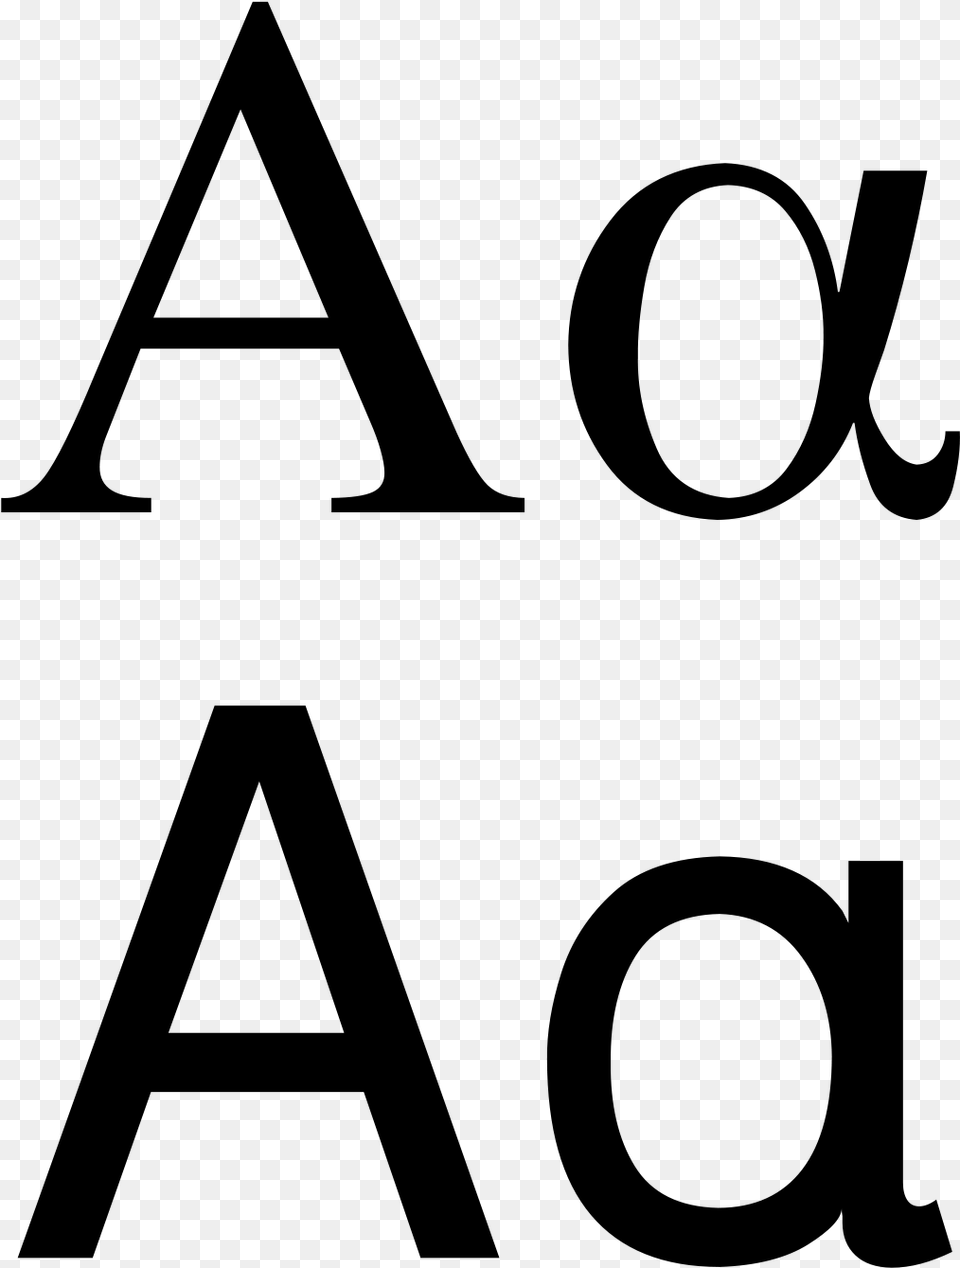 Greek Letter Alpha, Gray Free Transparent Png